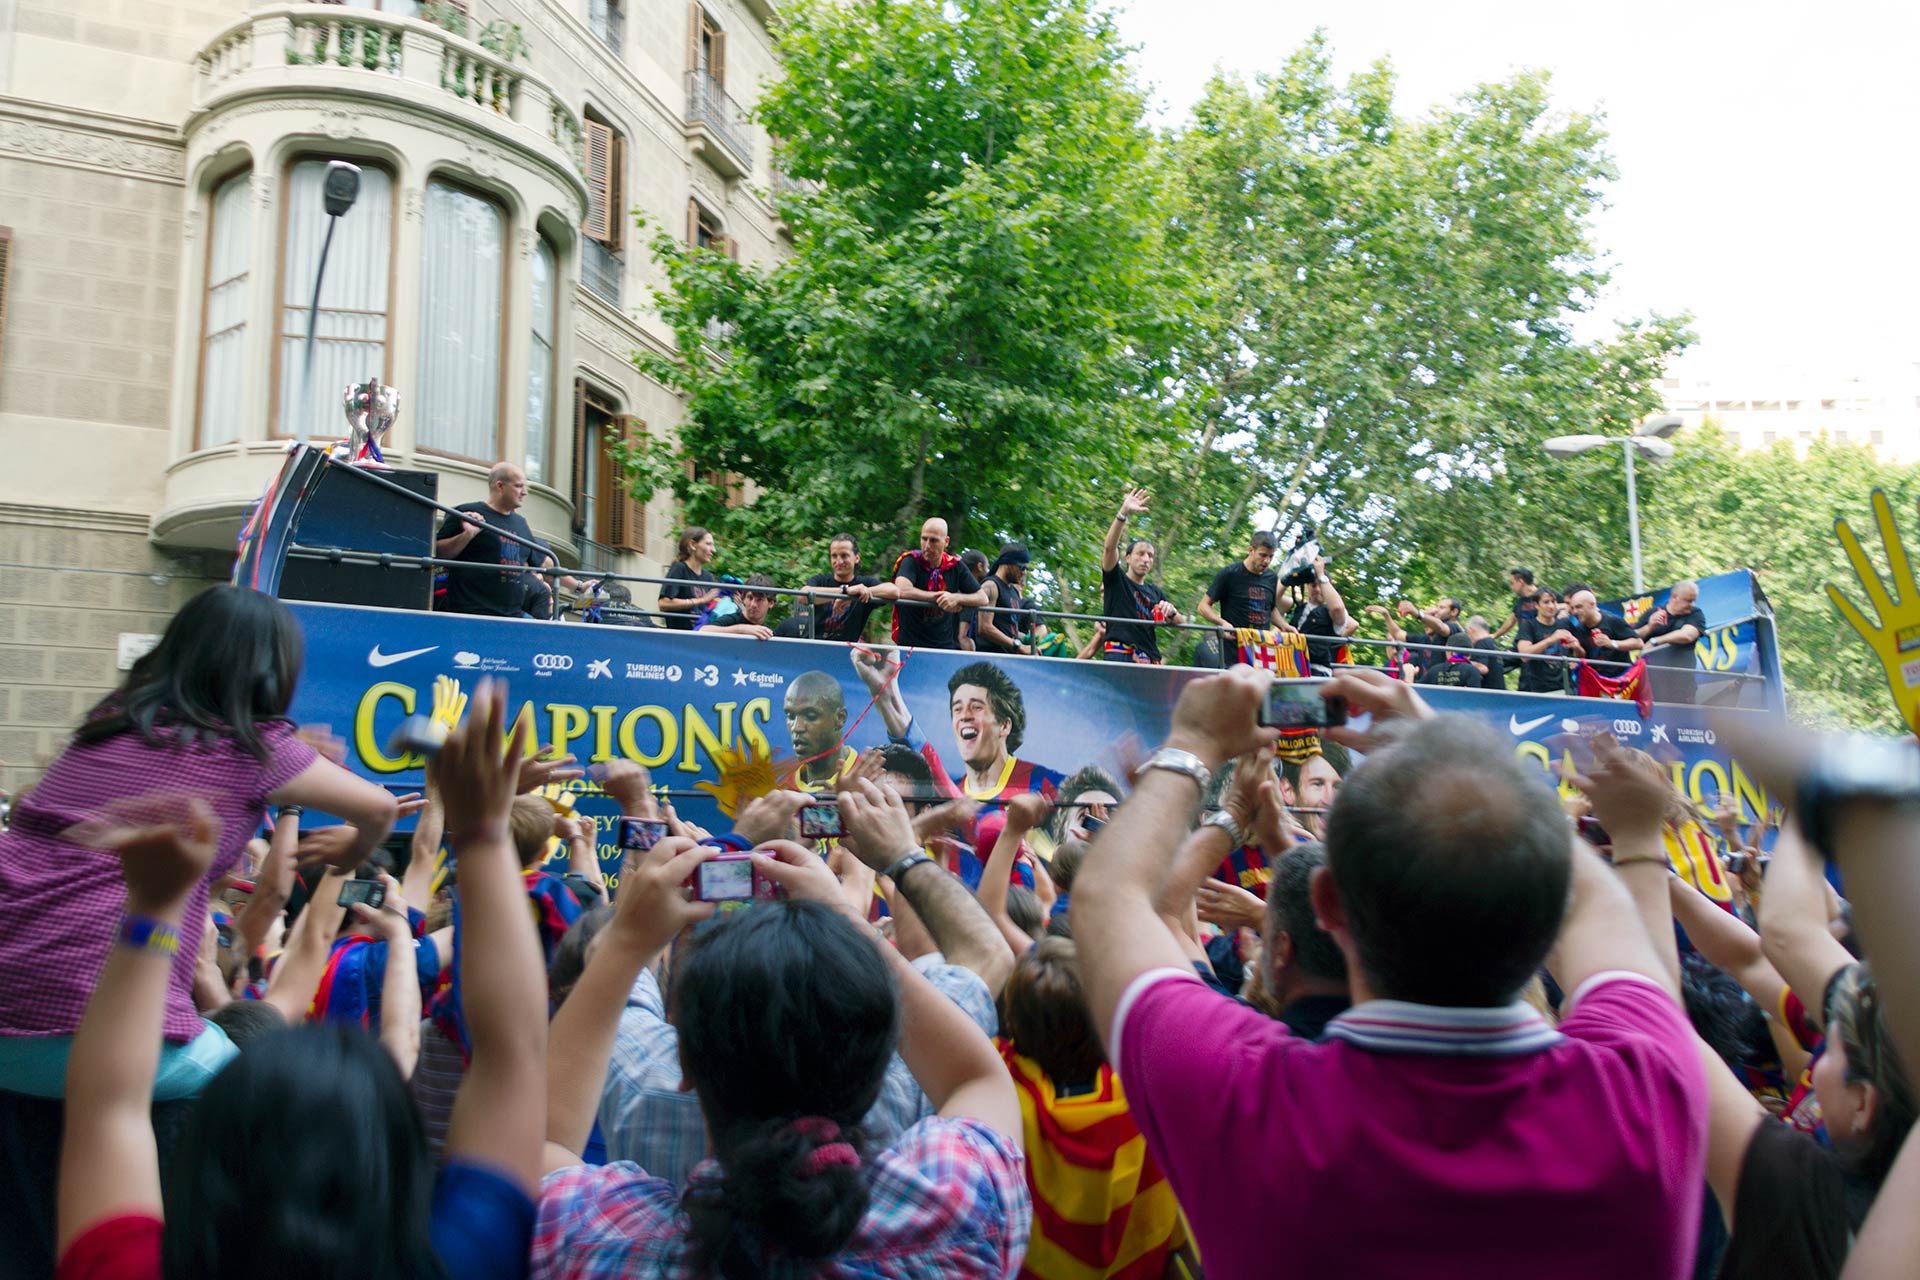 Barçan Champions liigan voitonkulkue 2009 Barcelonassa © Tuulia Kolehmainen